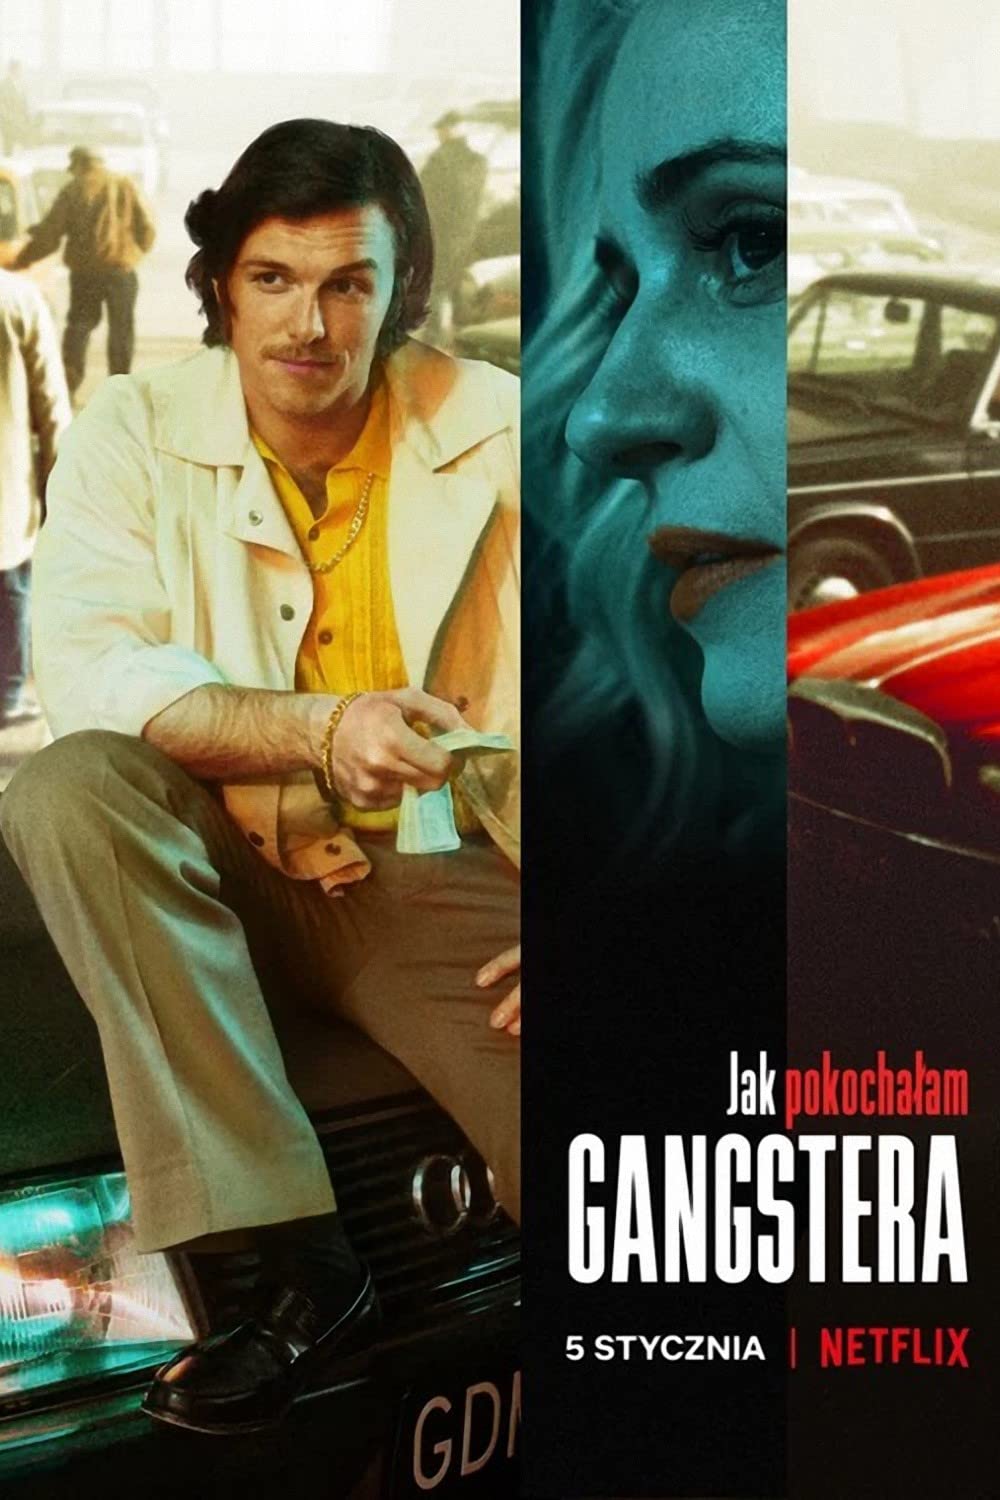 ดูหนังออนไลน์ฟรี ดูหนังใหม่ NETFLIX How I Fell in Love with a Gangster 2022 วิถีรักมาเฟีย movie678